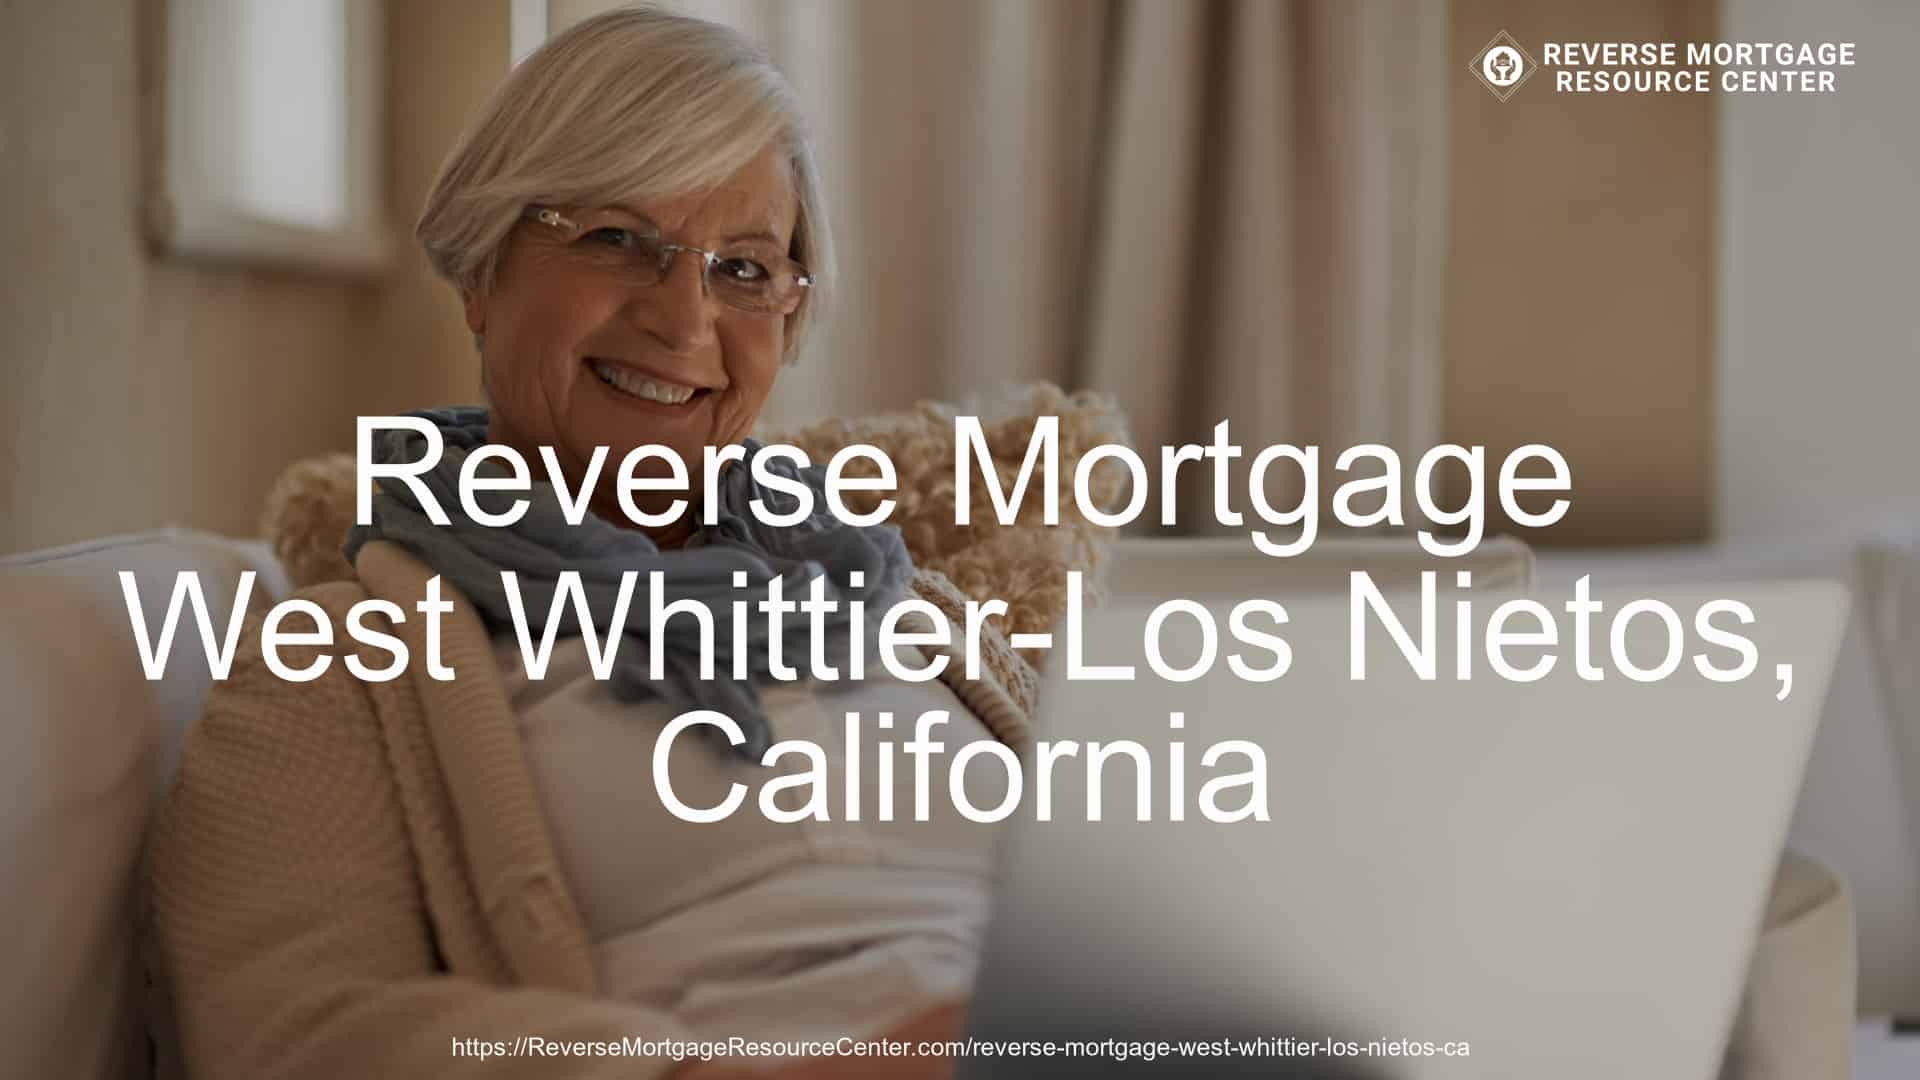 Reverse Mortgage in West Whittier-Los Nietos, CA